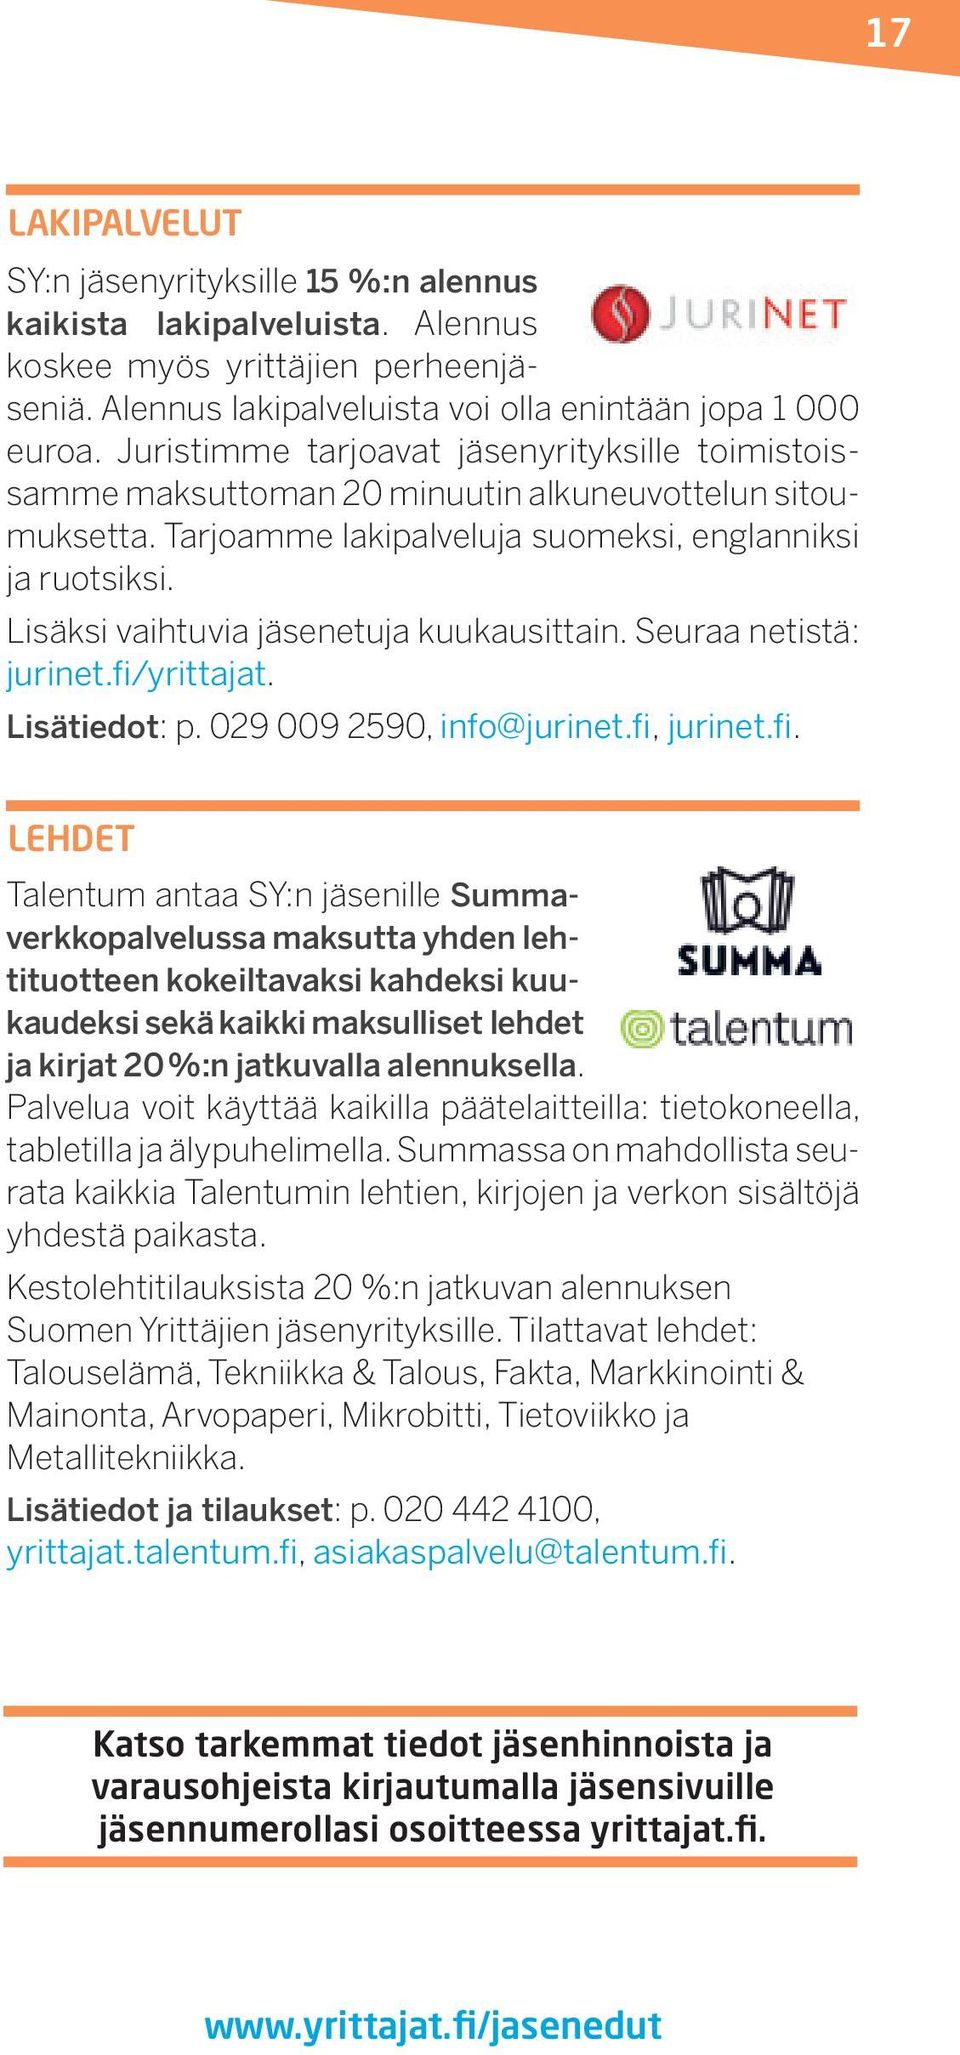 Lisäksi vaihtuvia jäsenetuja kuukausittain. Seuraa netistä: jurinet.fi/